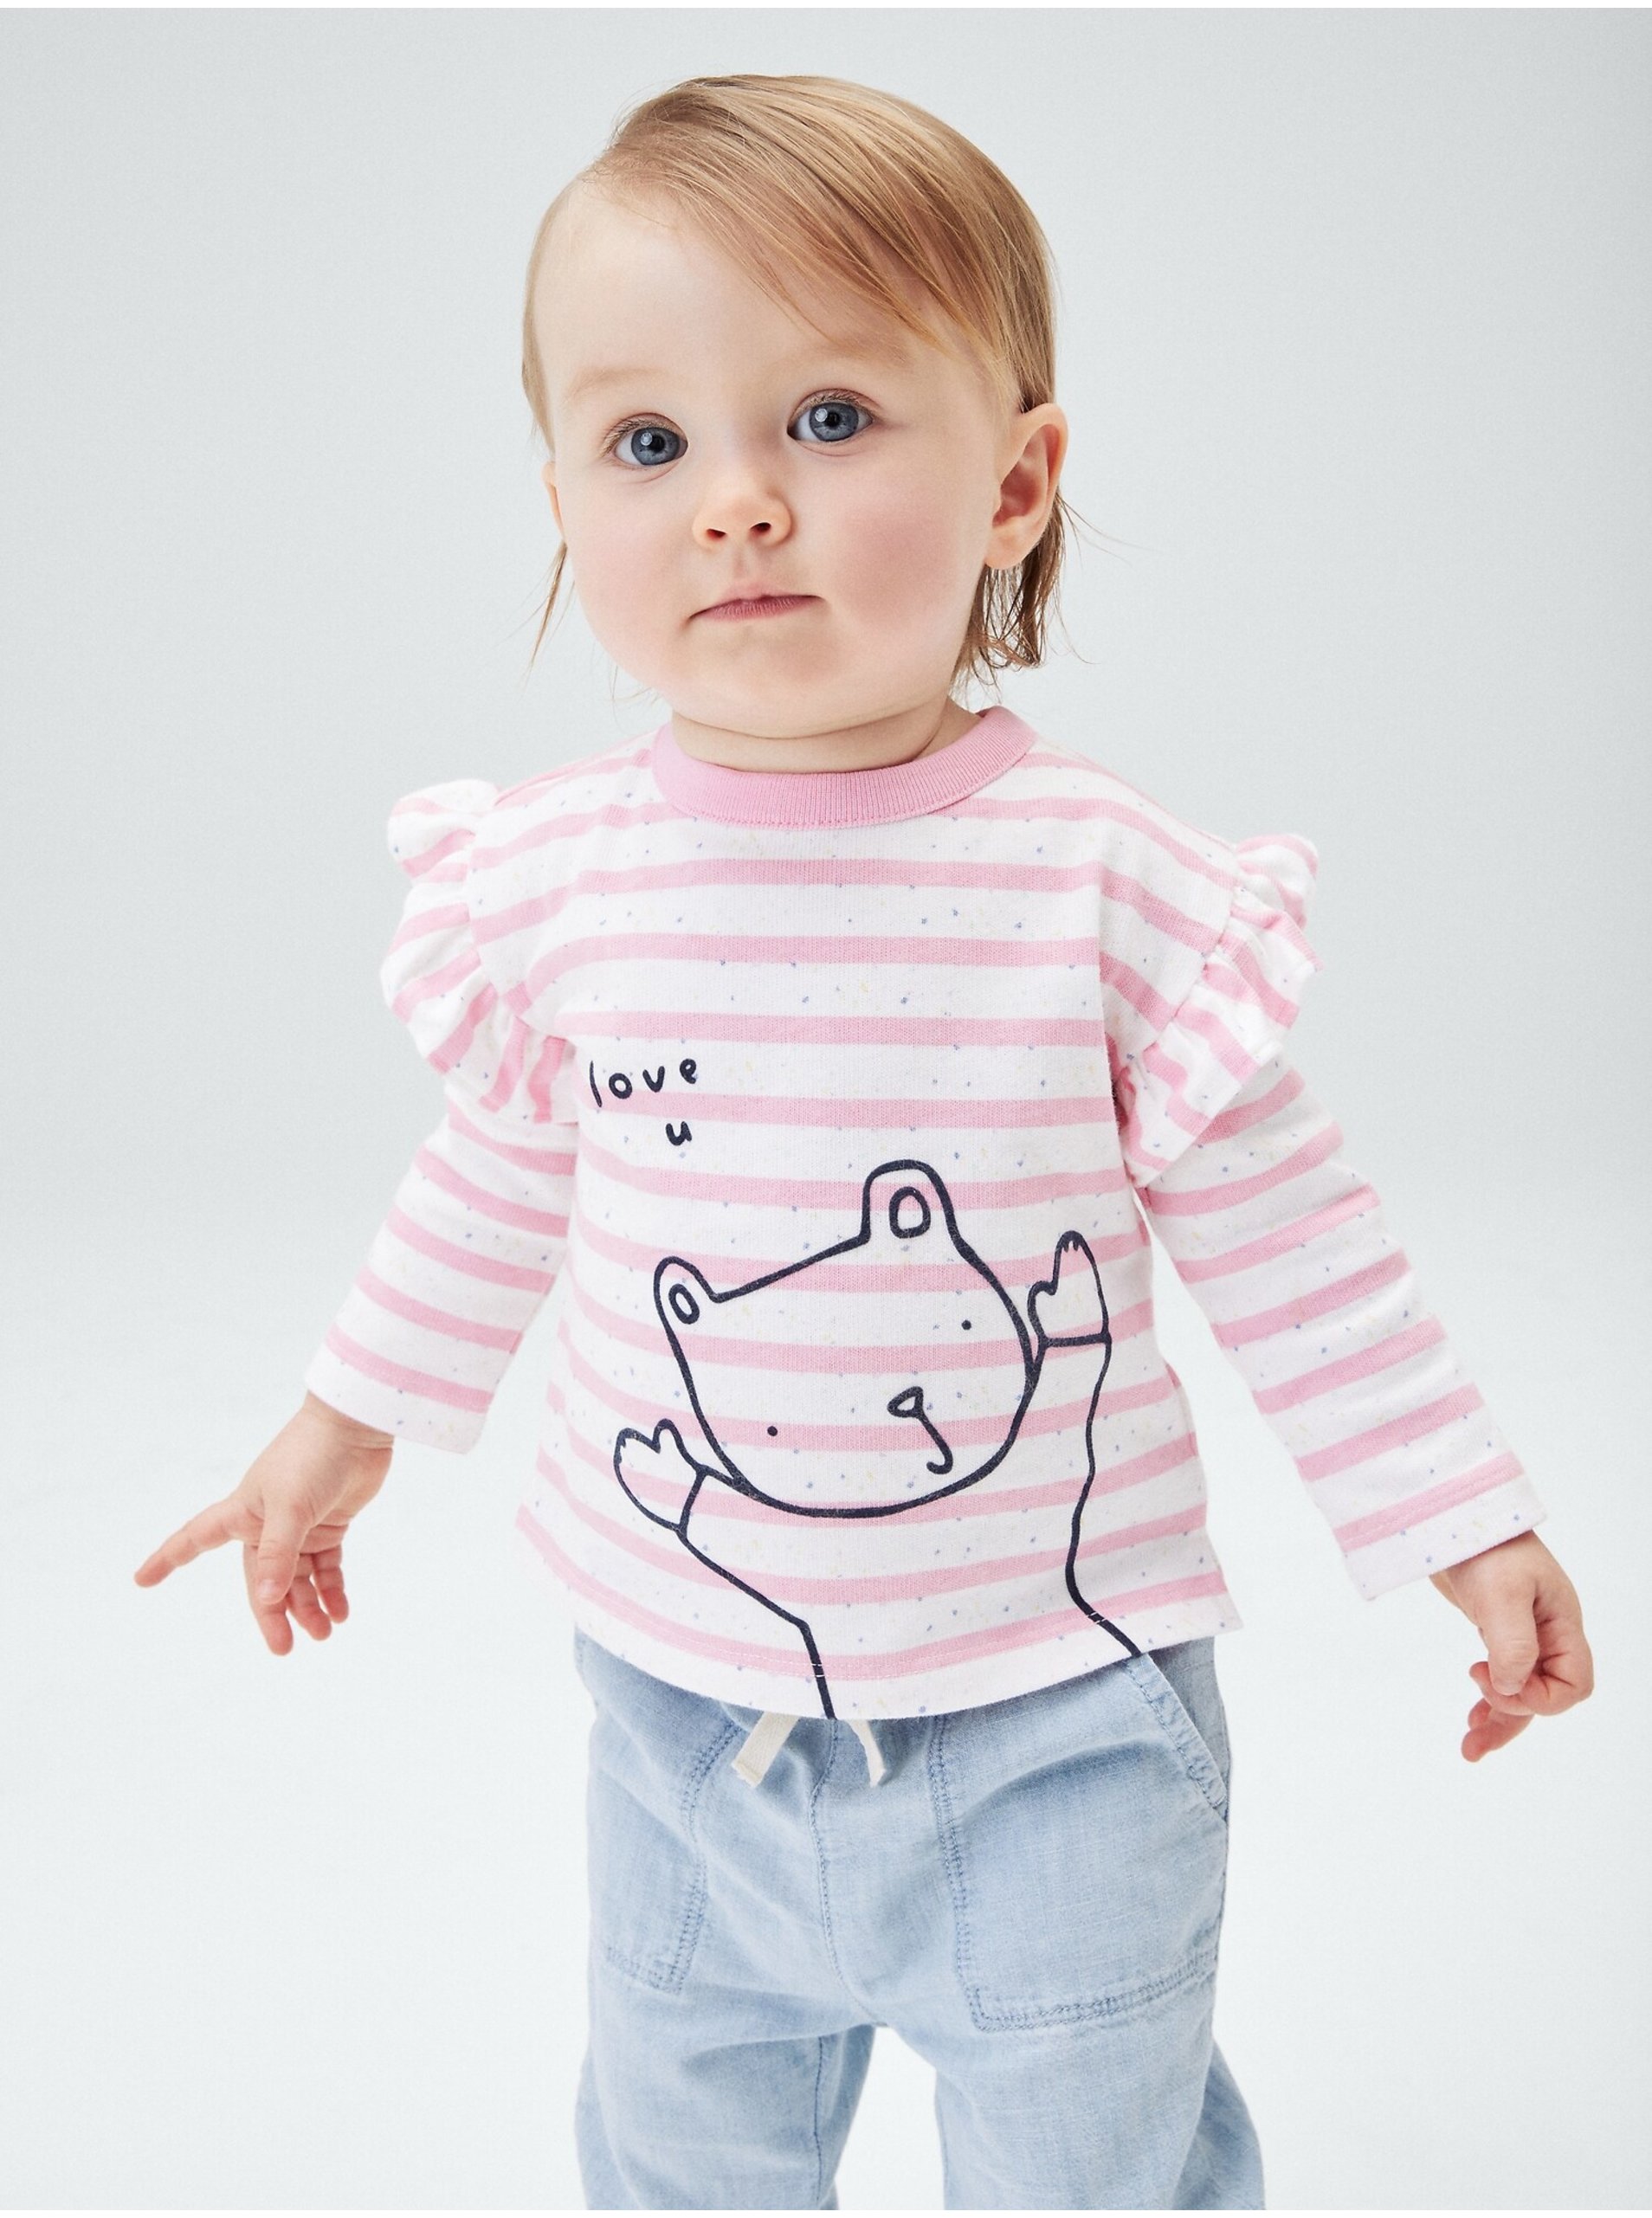 Lacno Baby tričko brannan knit Ružová